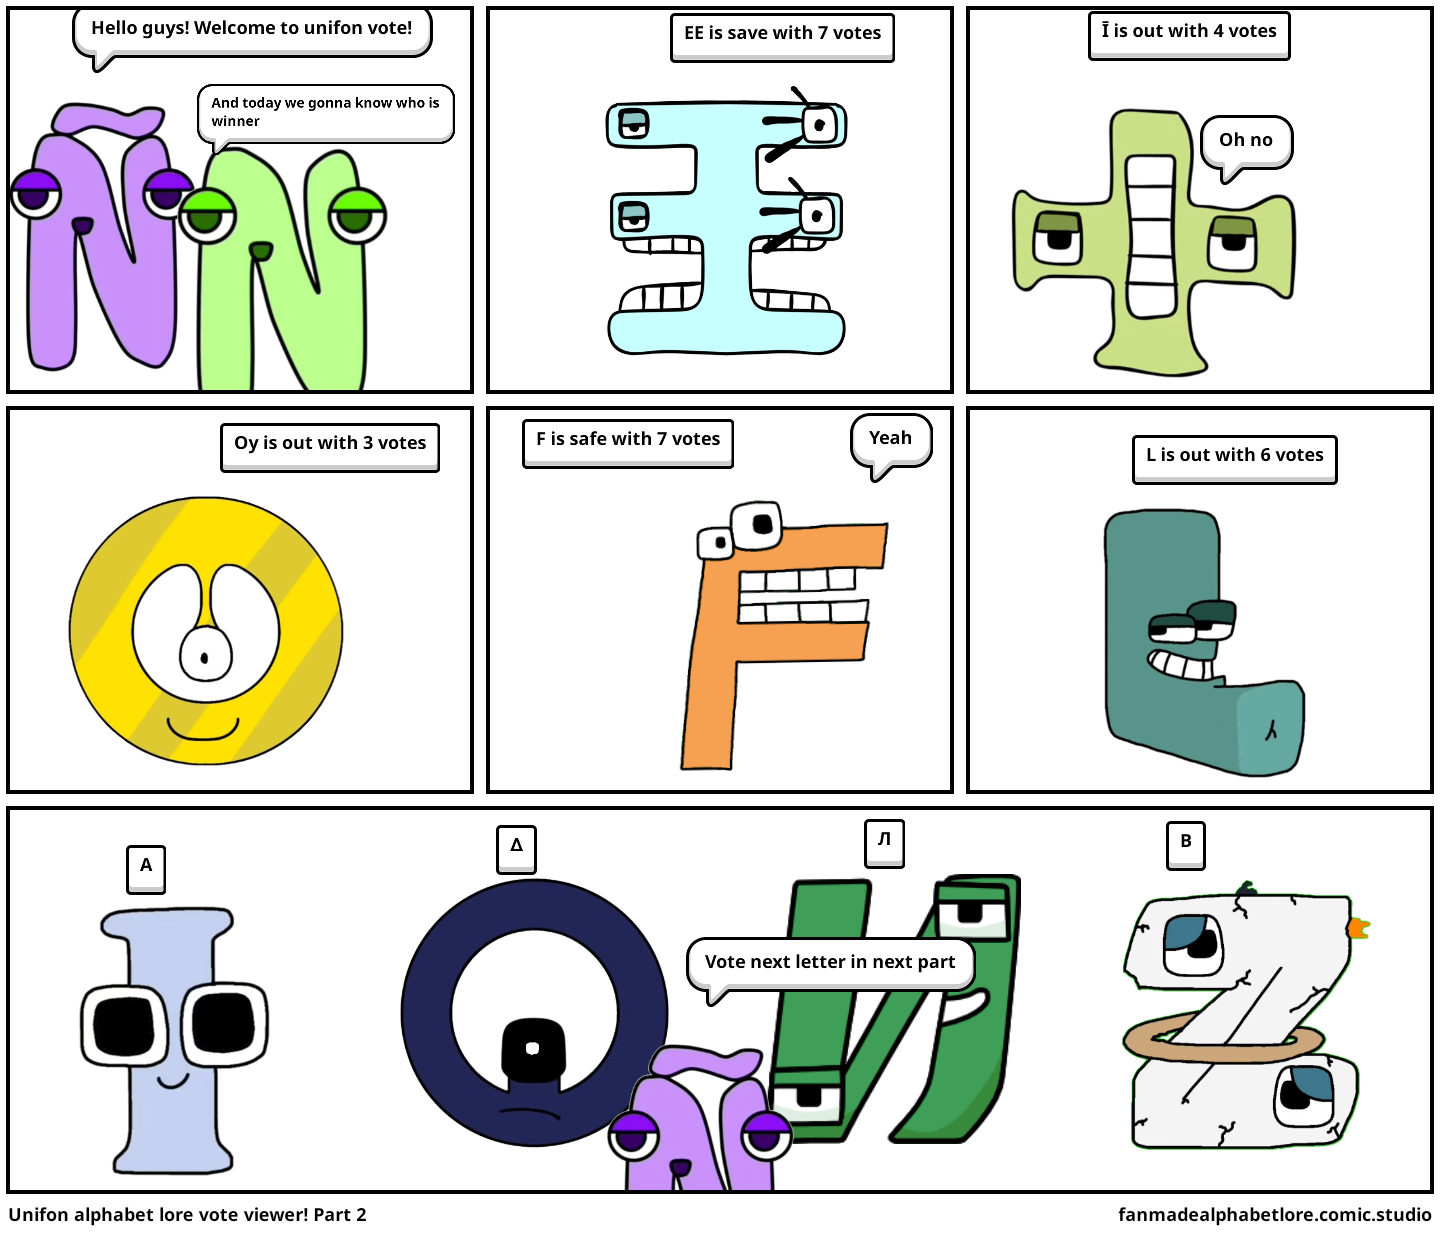 English Letters Found In The Unifon Alphabet Lore! - Comic Studio